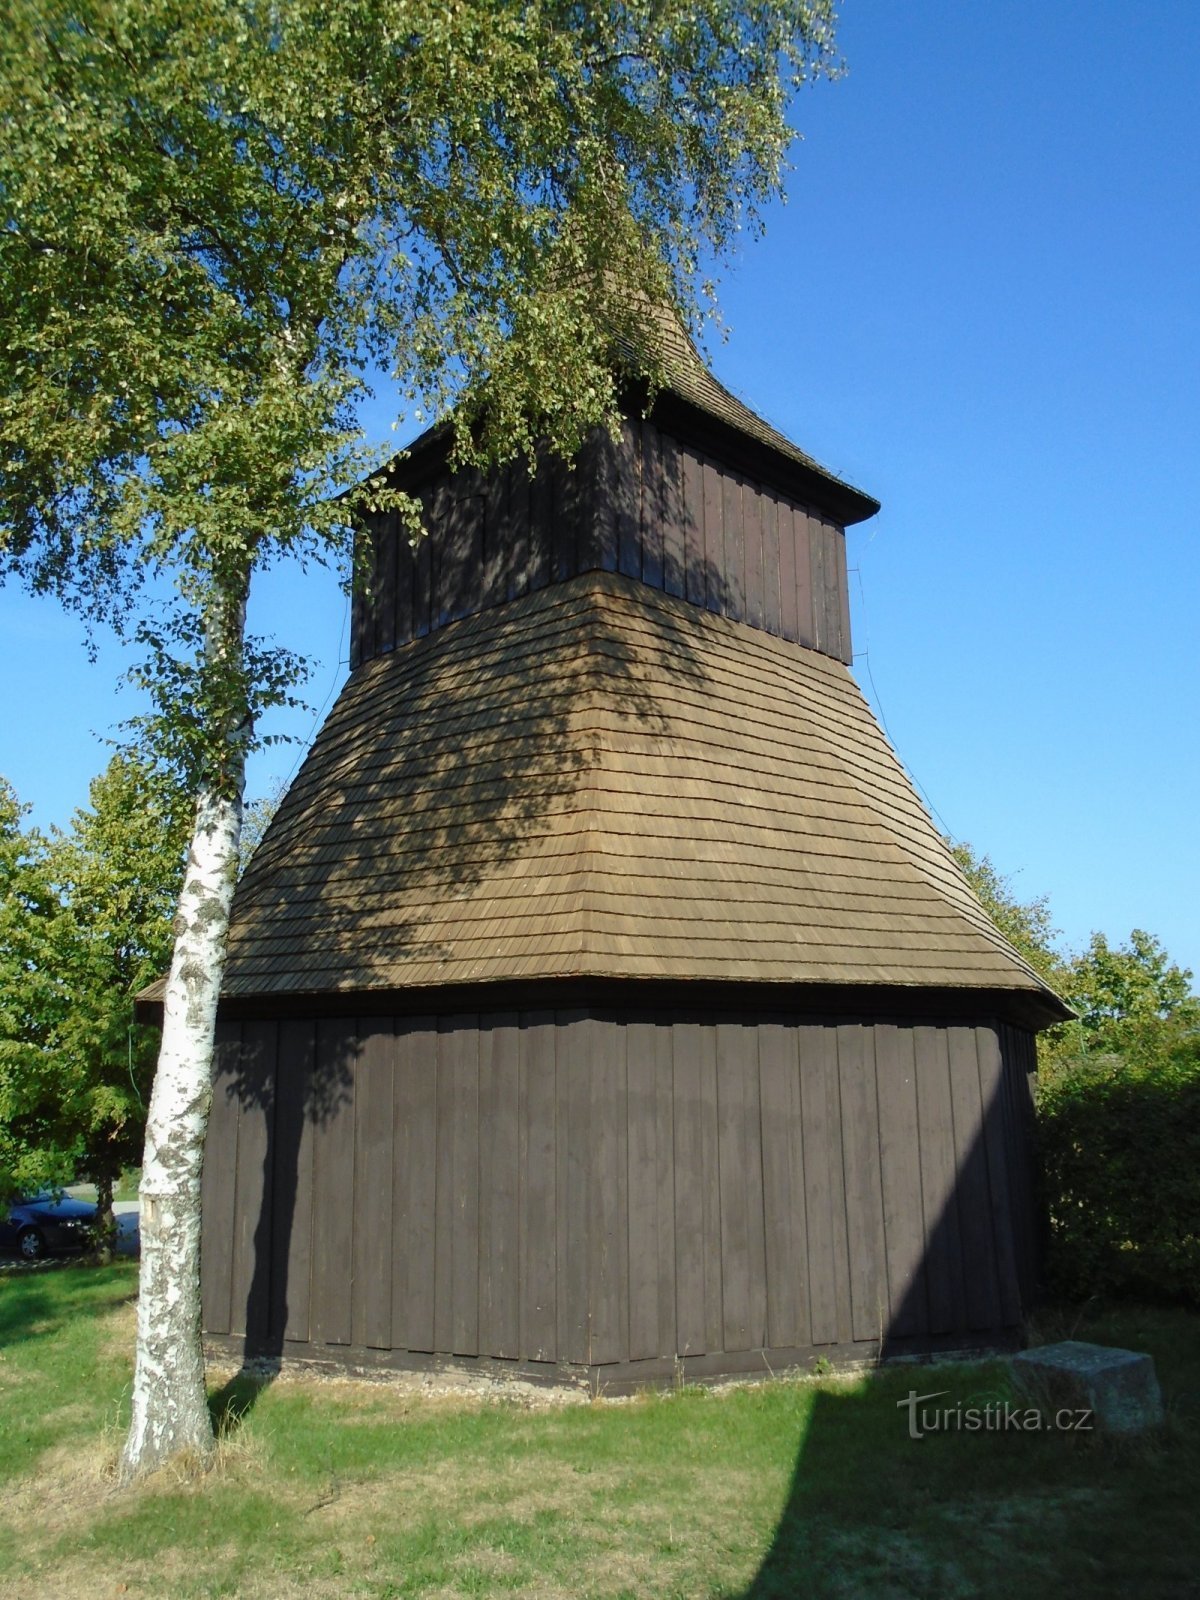 Dzwonnica przy kościele św. Wacława i św. Stanisława (Měník)